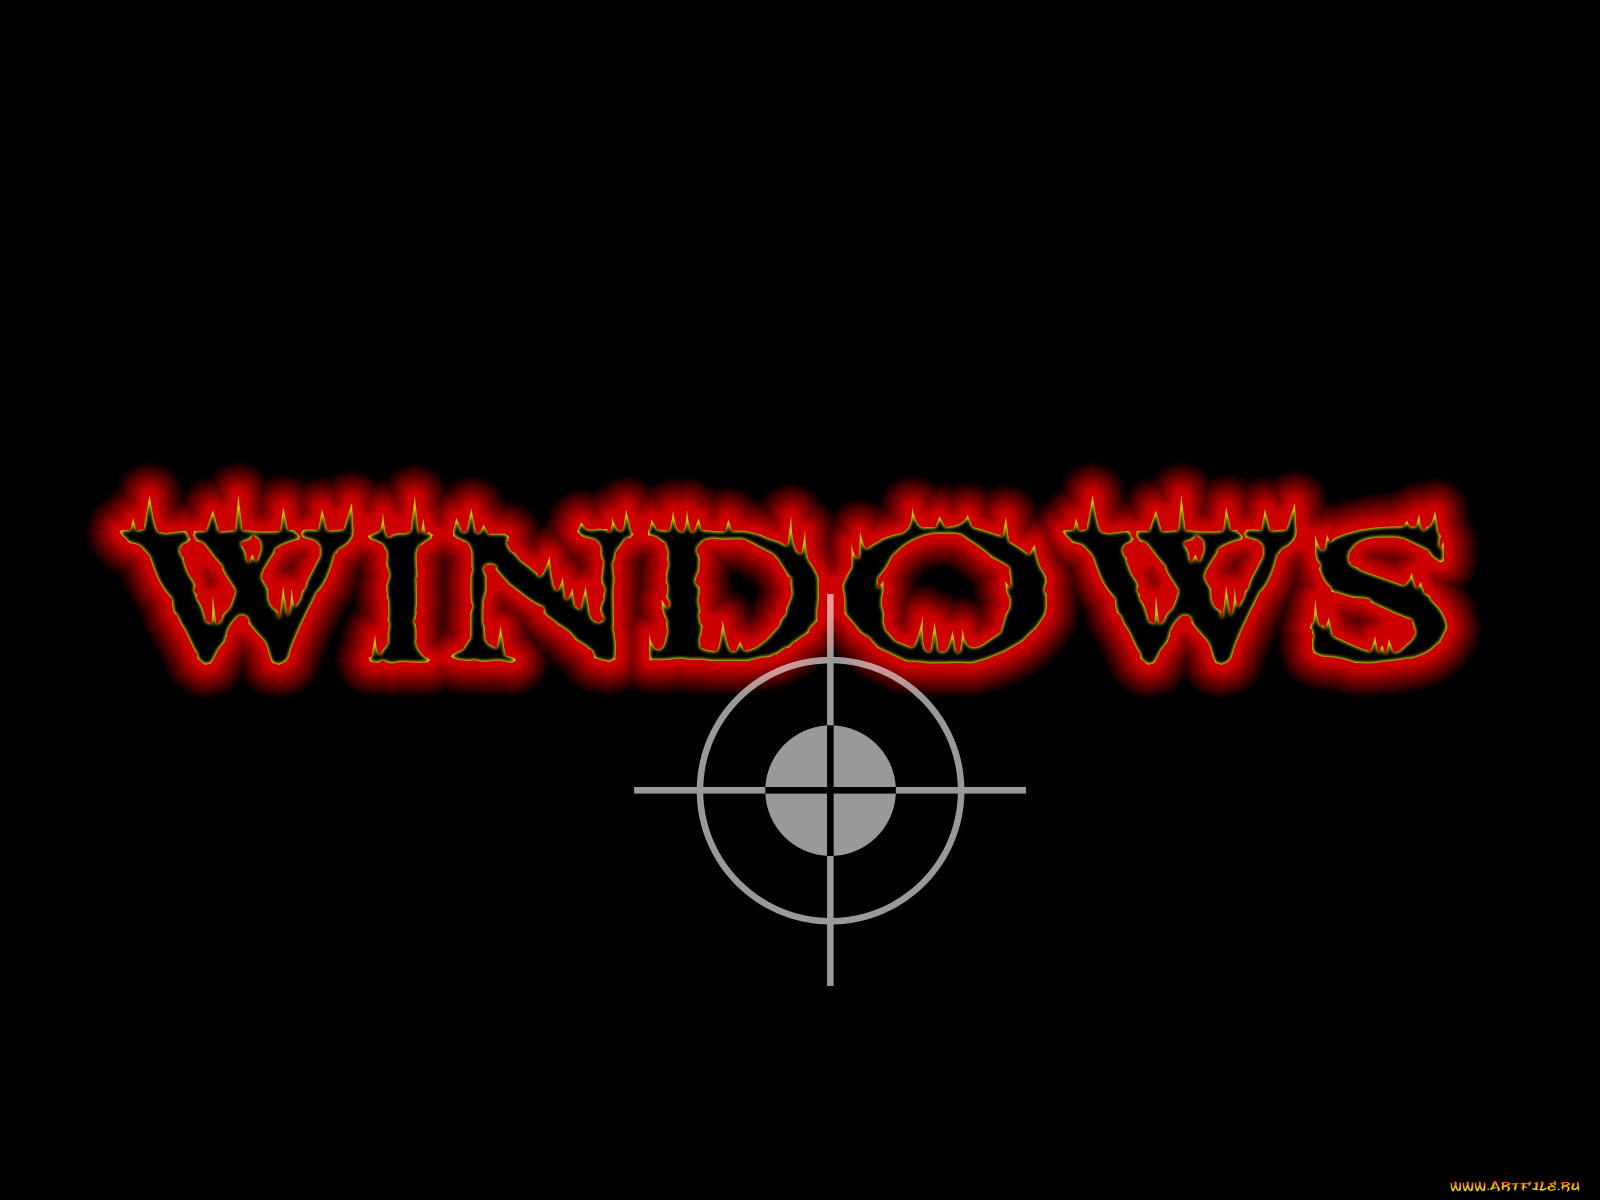 компьютеры, windows, 2000